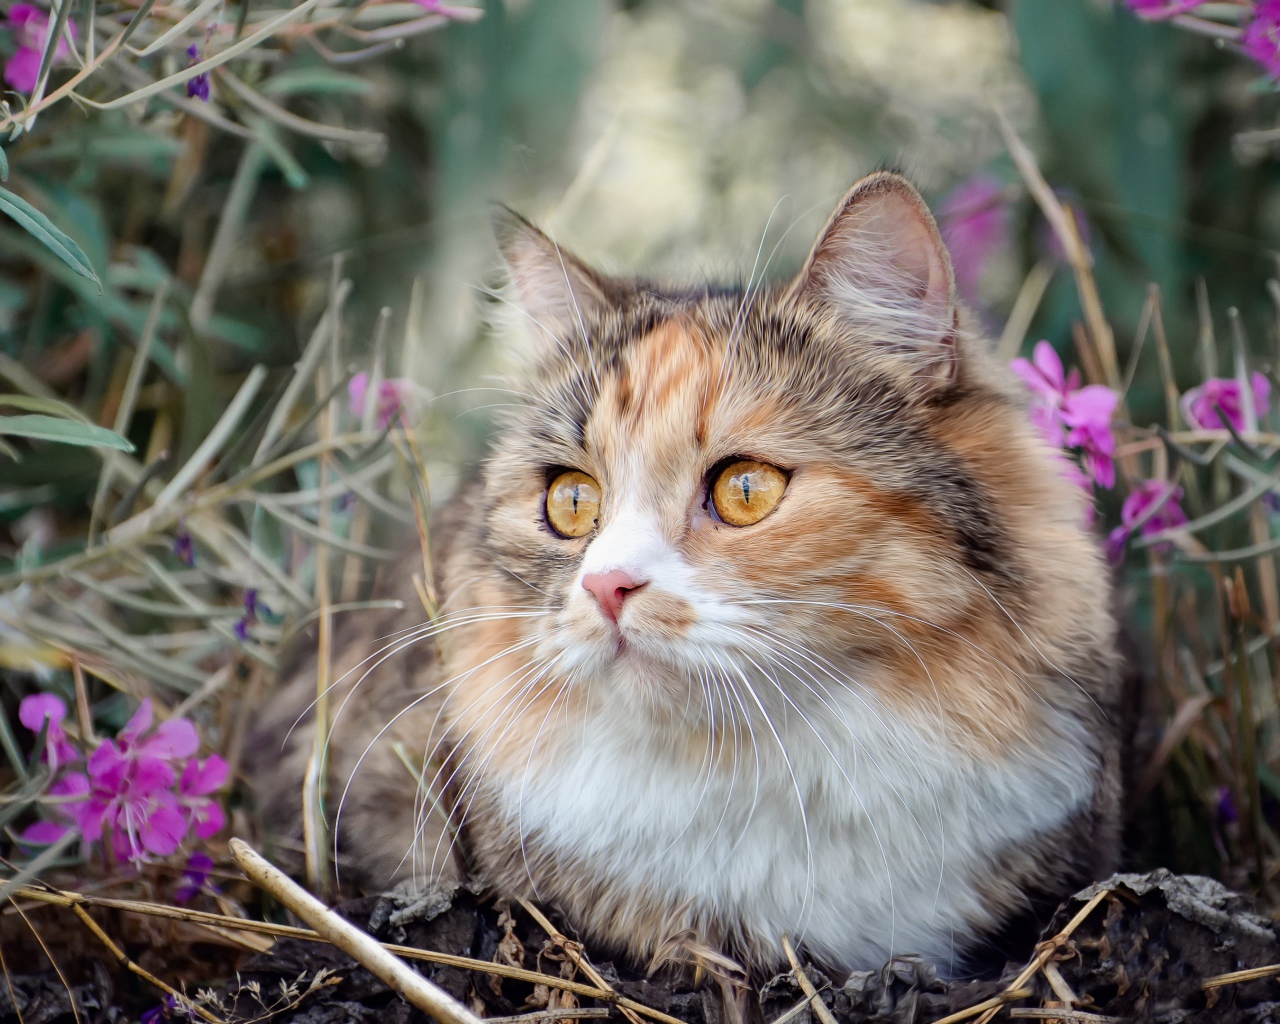 Пустая испуганная кошка сидит в траве с розовыми цветами